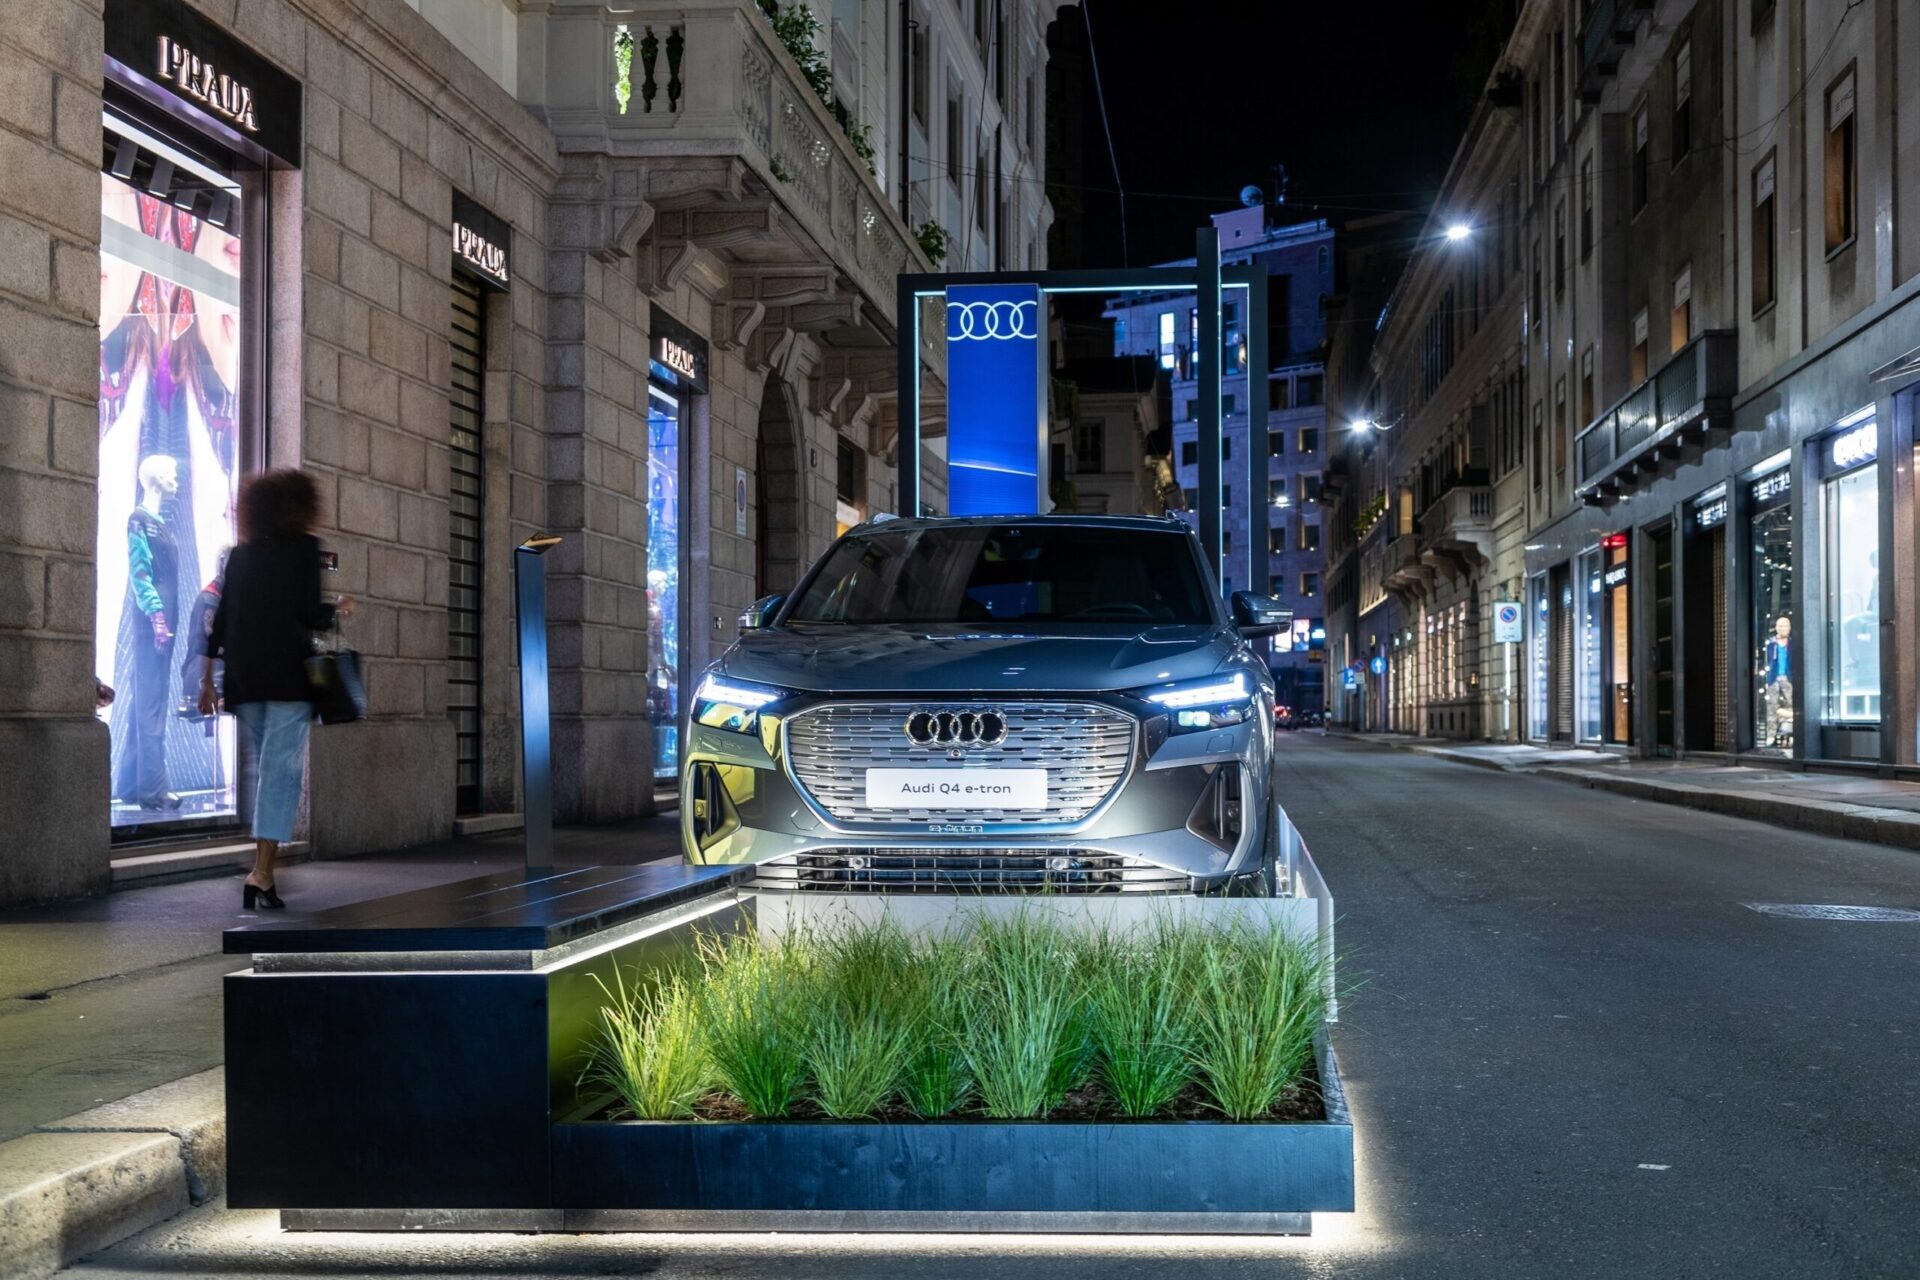 Audi покажет концептуальный электромобиль Audi A6 e-tron на Неделе дизайна в Милане